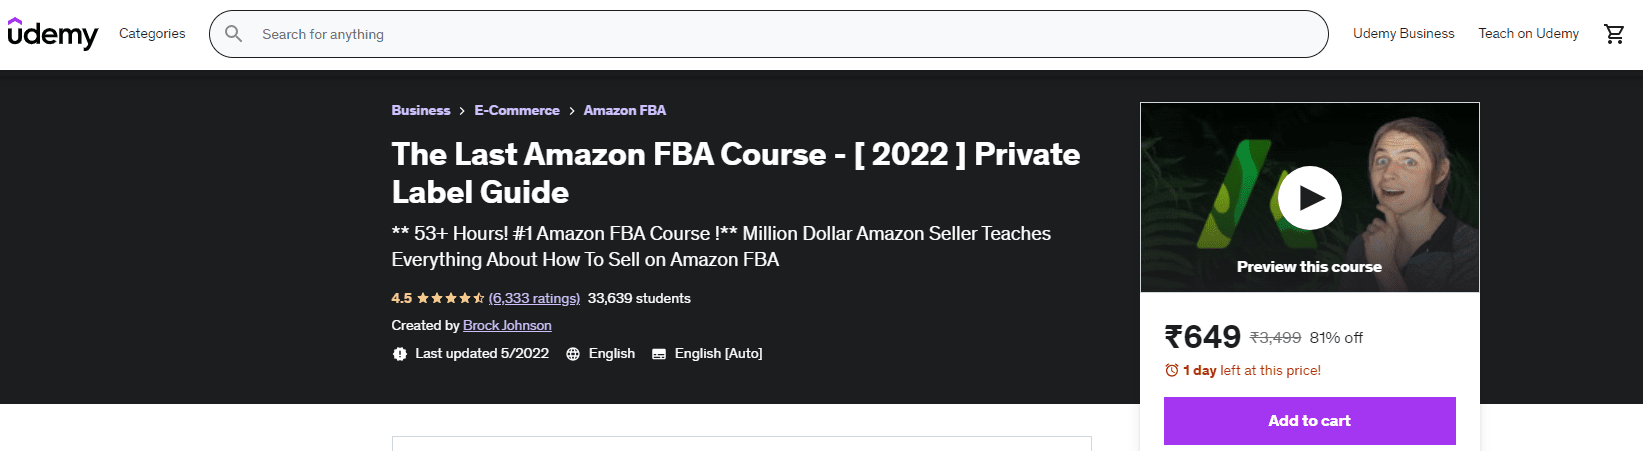 The Last Amazon FBA Course – Private Label Guide